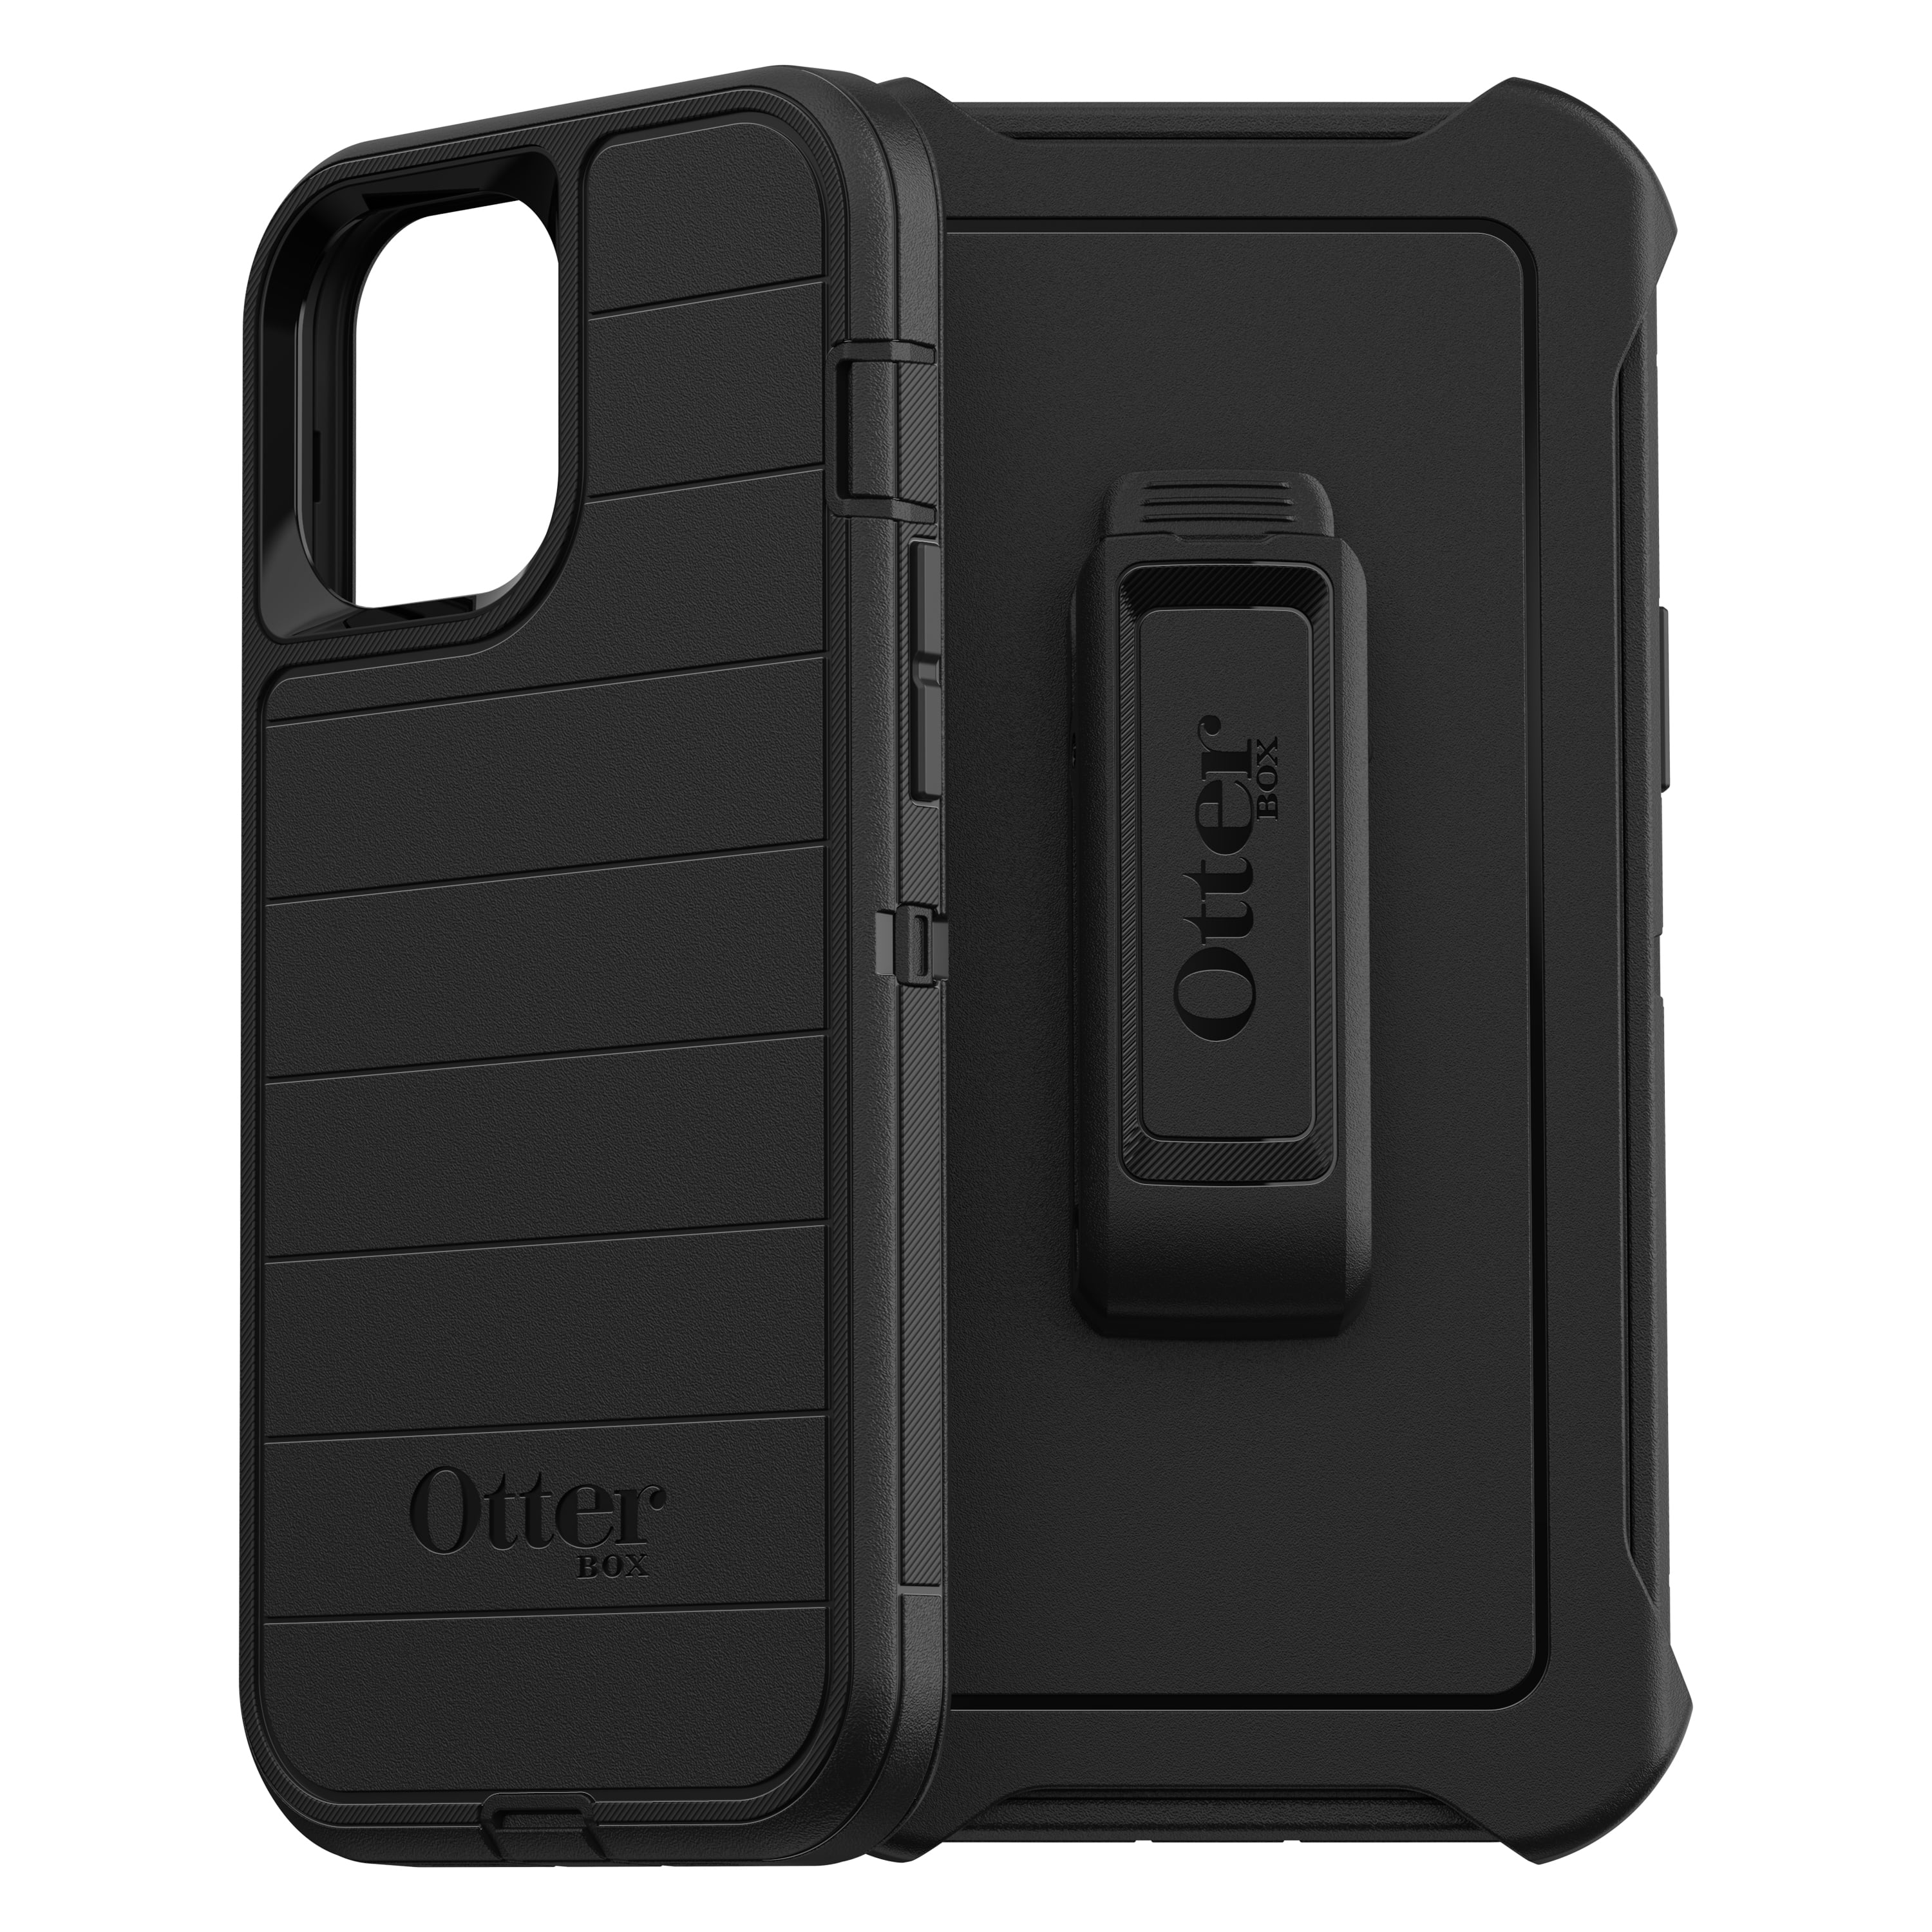 OtterBox pour Apple iPhone 13 Pro Max / iPhone 12 Pro Max Noir coque antichoc robuste Premium Série Defender